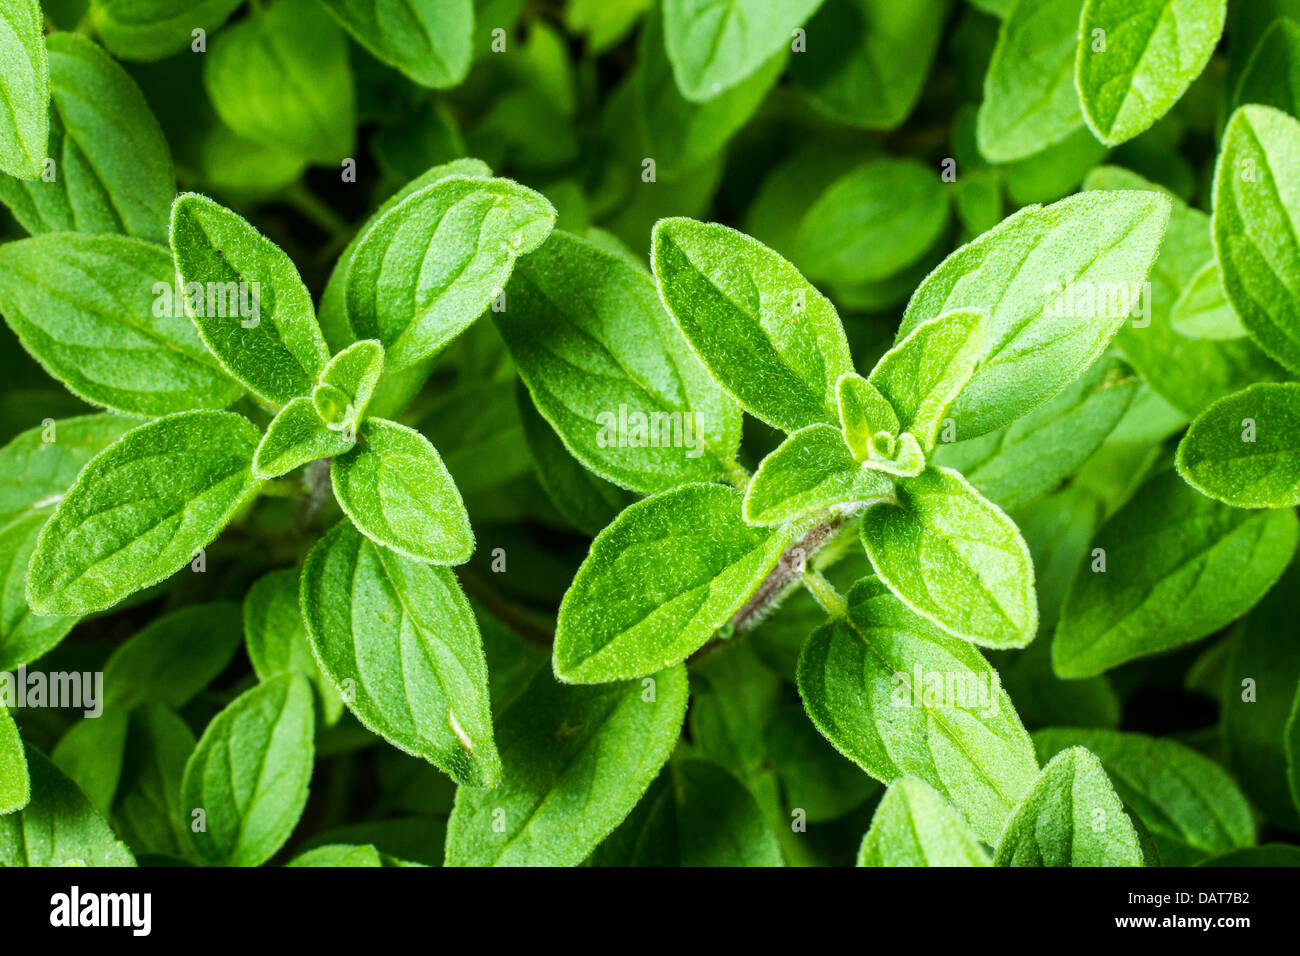 Close up shot of oregano leaves. Stock Photo